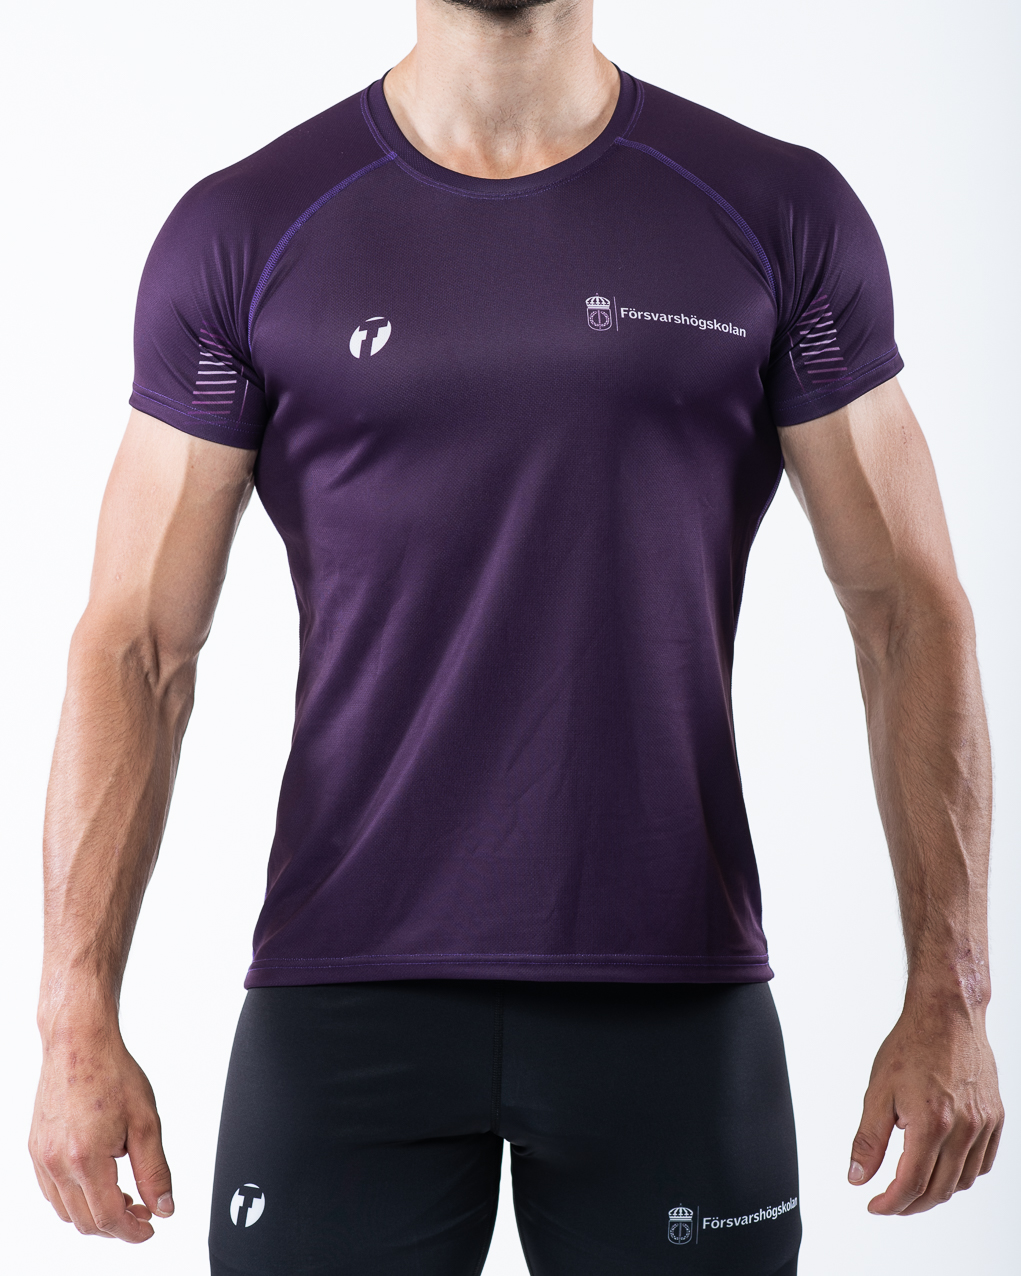 Men's t-shirt, purple, front